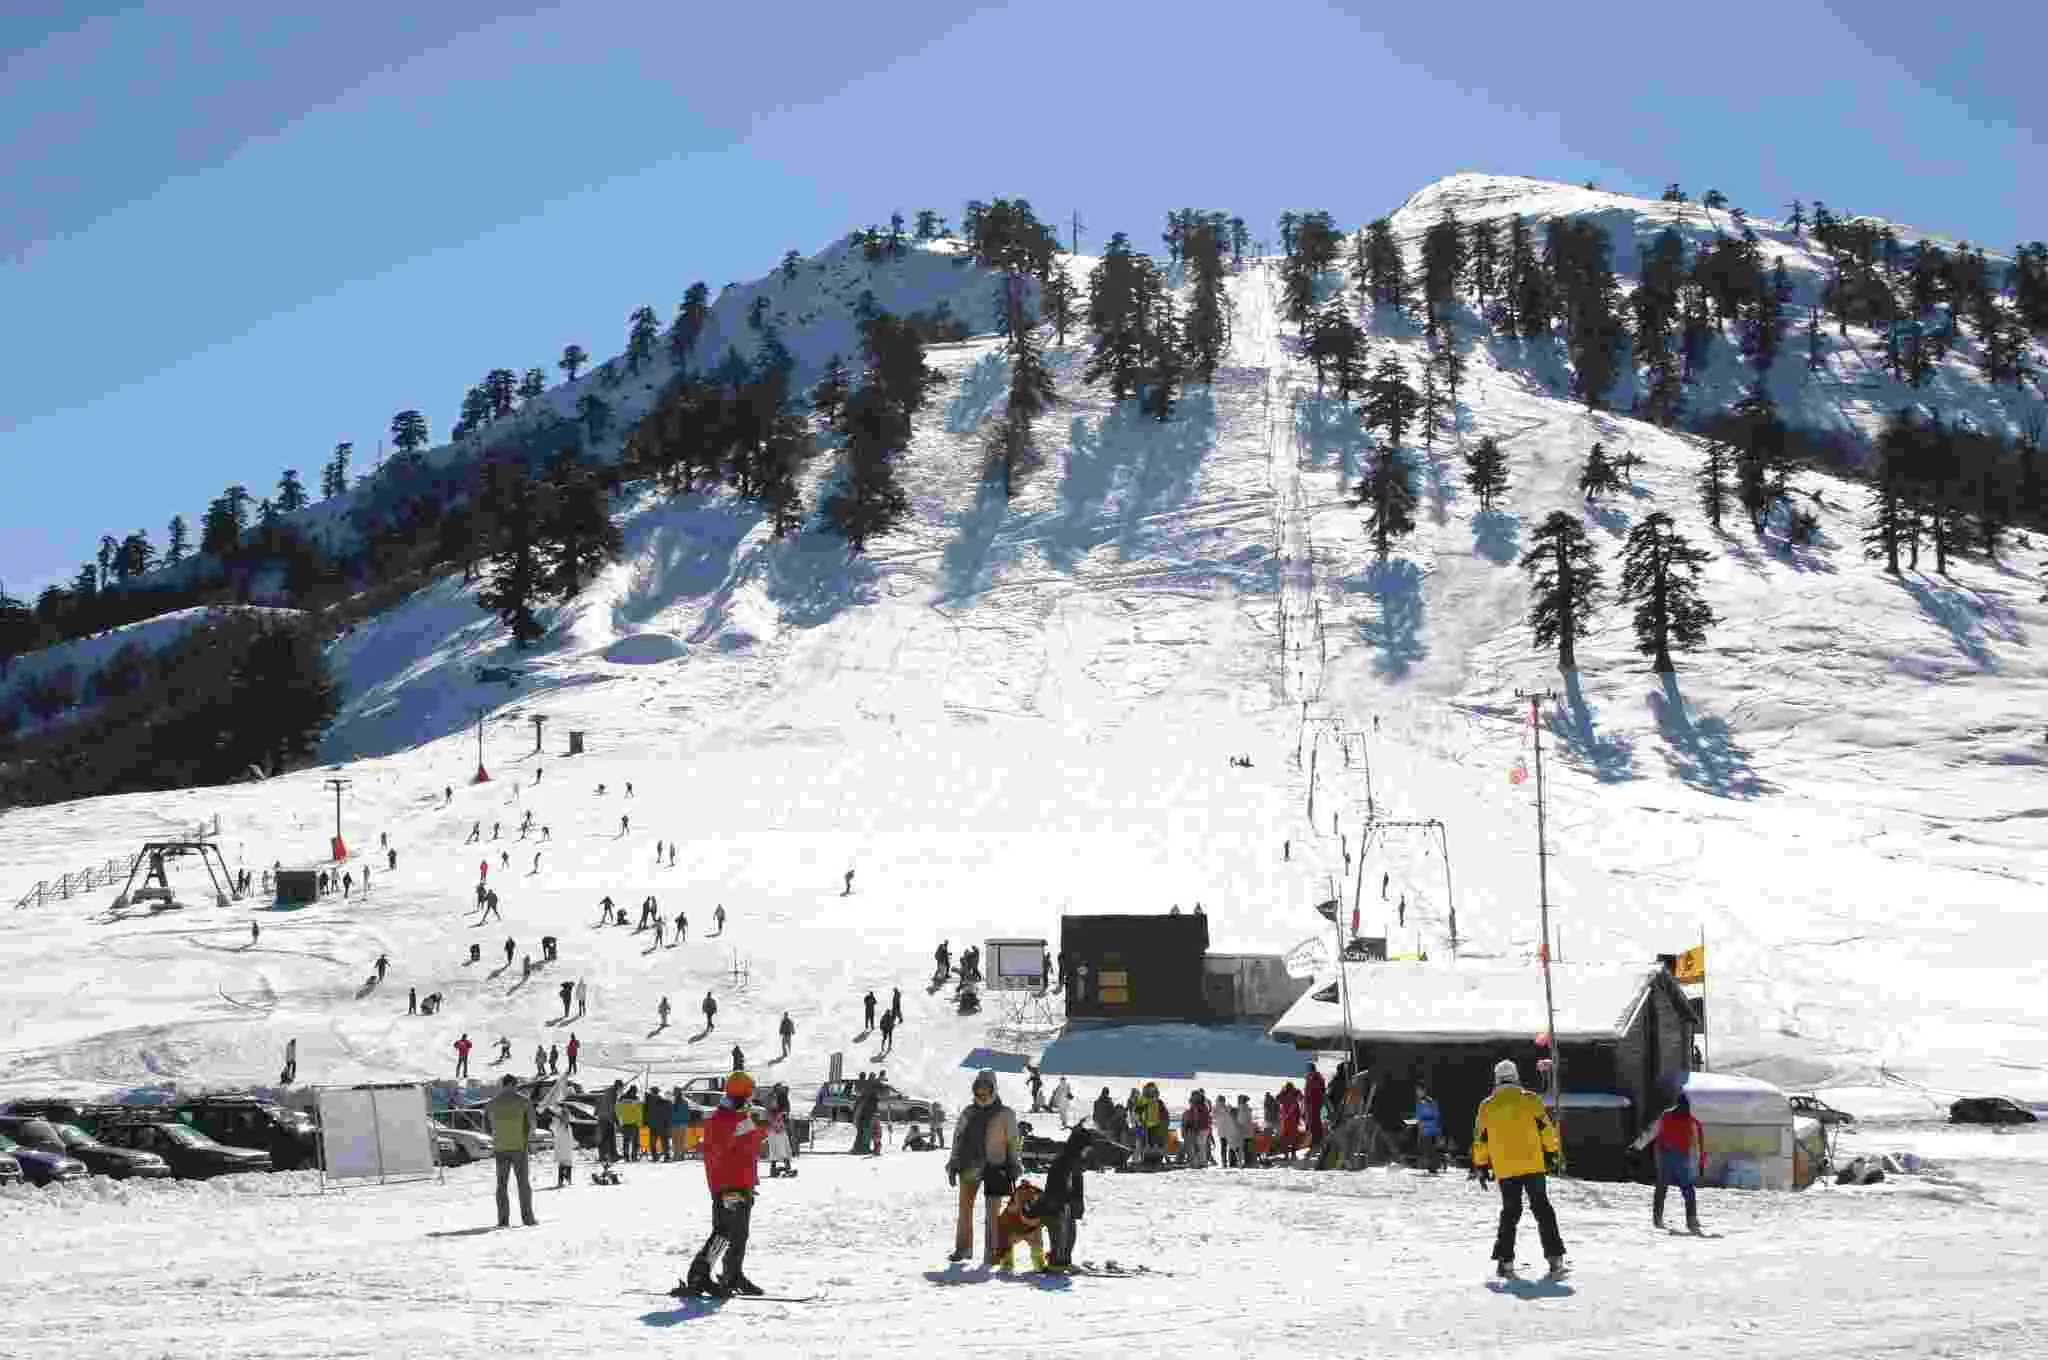 Vasilitsa Ski Center in Greece, Europe | Snowboarding,Skiing - Rated 3.7